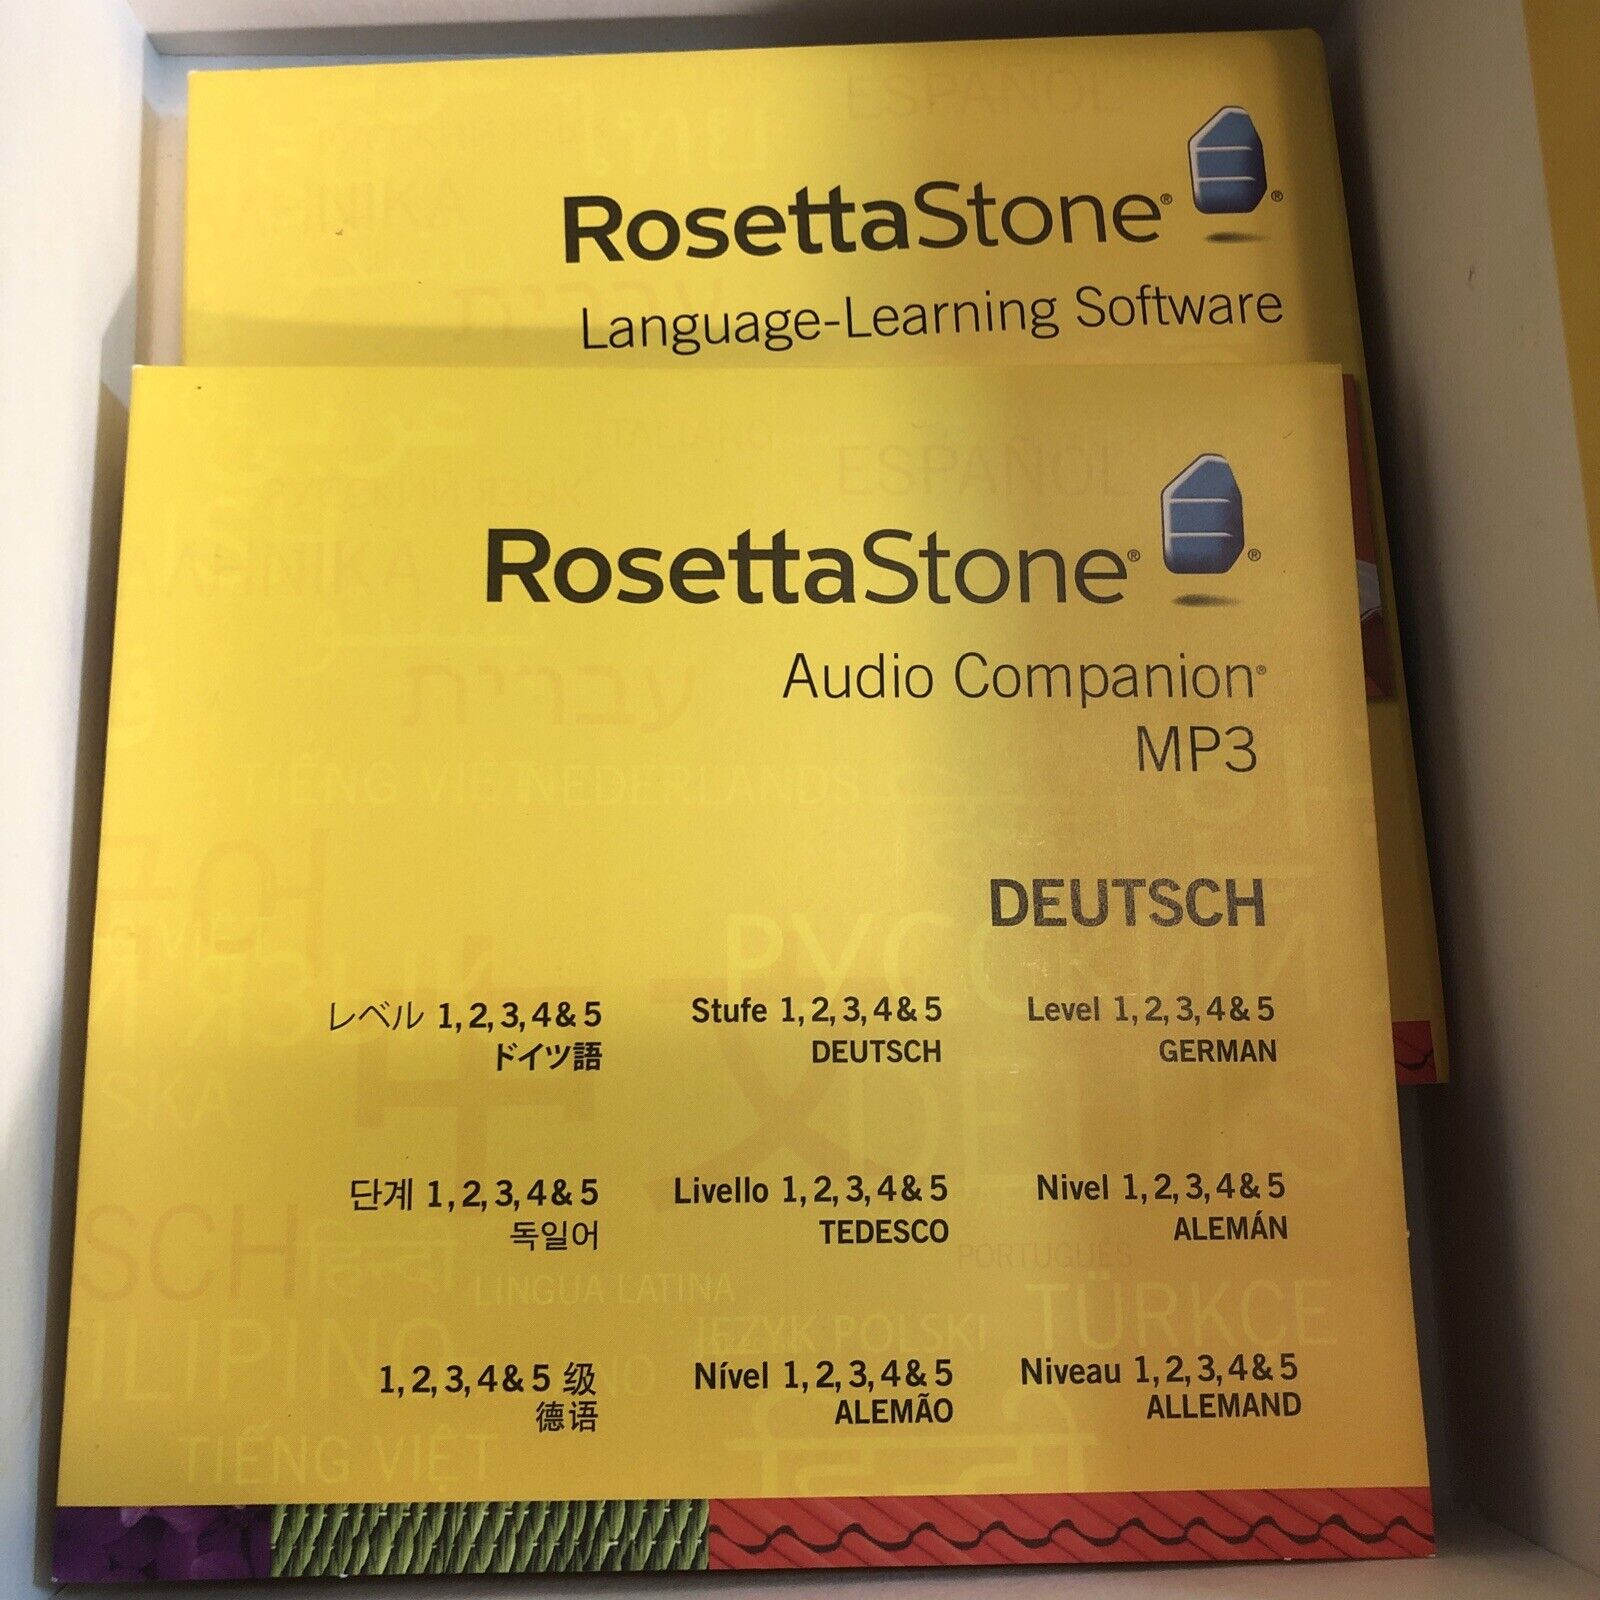 Rosetta Stone Deutsch German Level 1,2,3,4, & 5 Discs NO CODE CDs Only